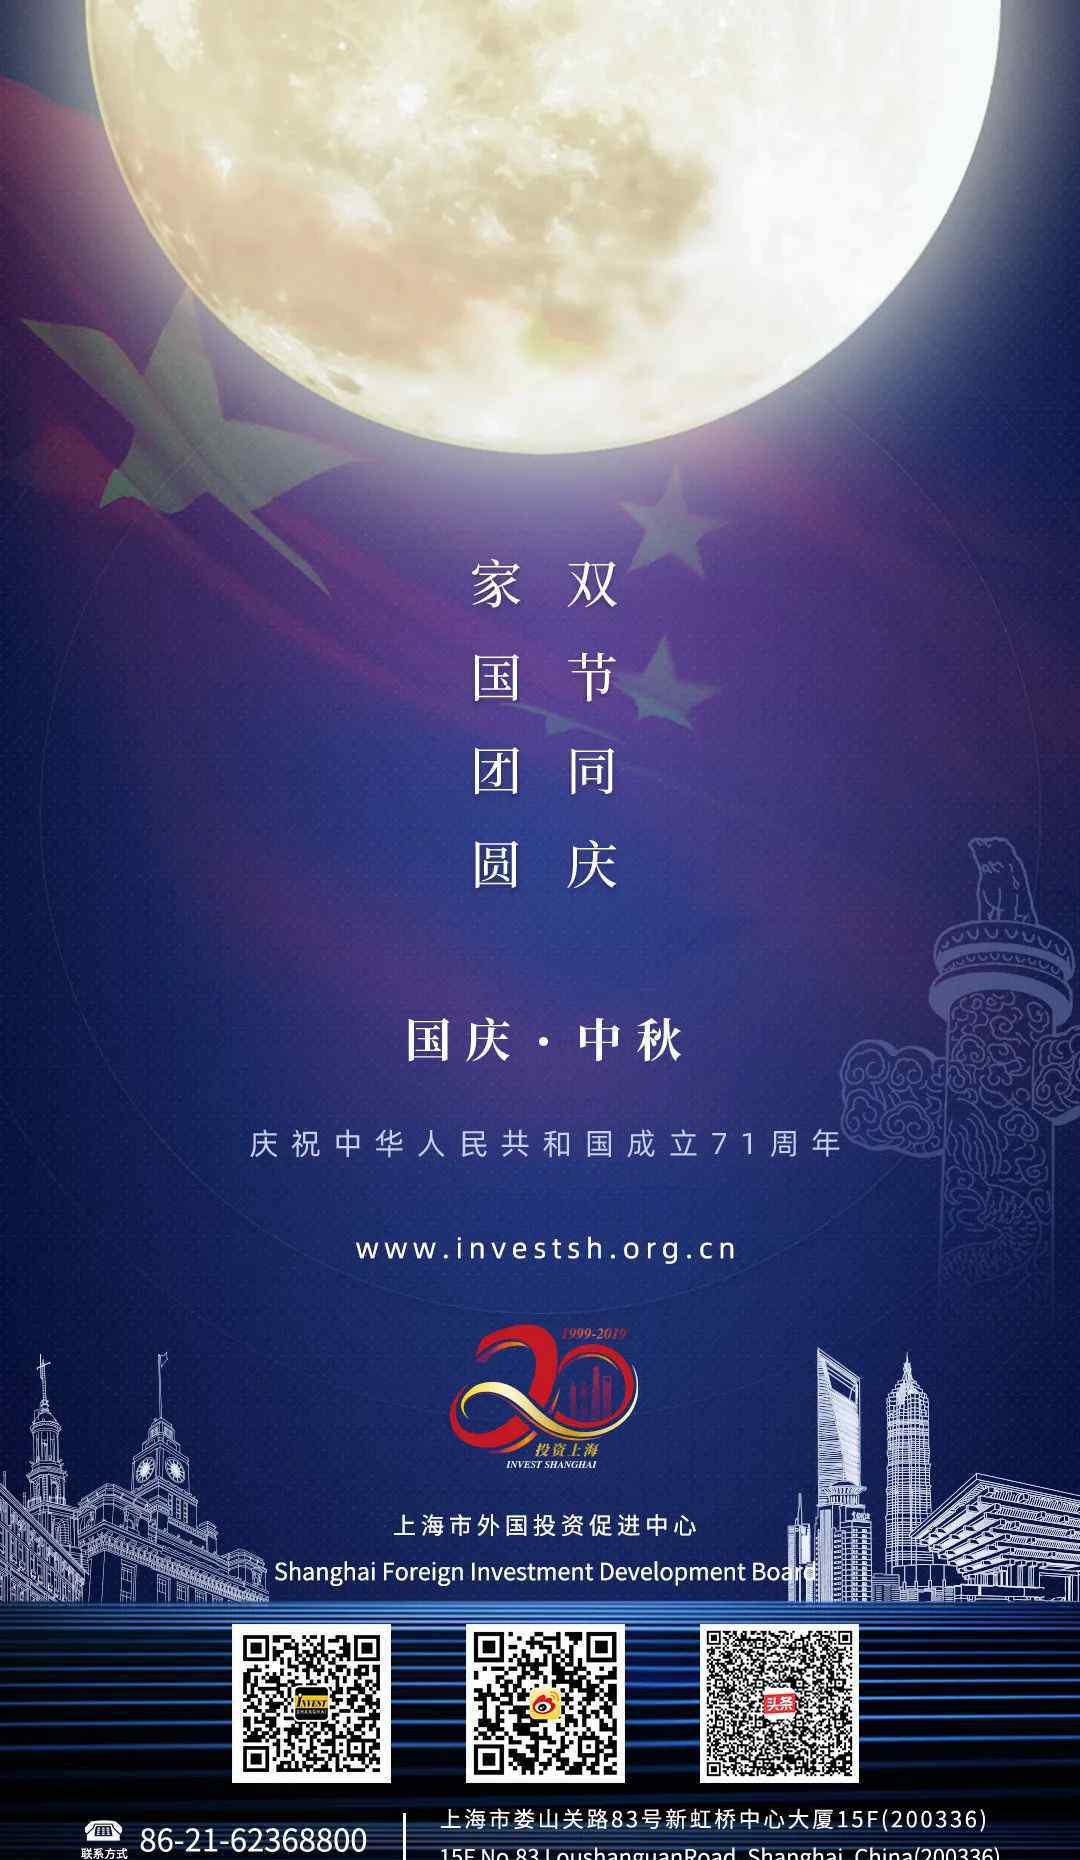 阖家安康 上海市外国投资促进中心祝您国庆、中秋佳节快乐，阖家安康！